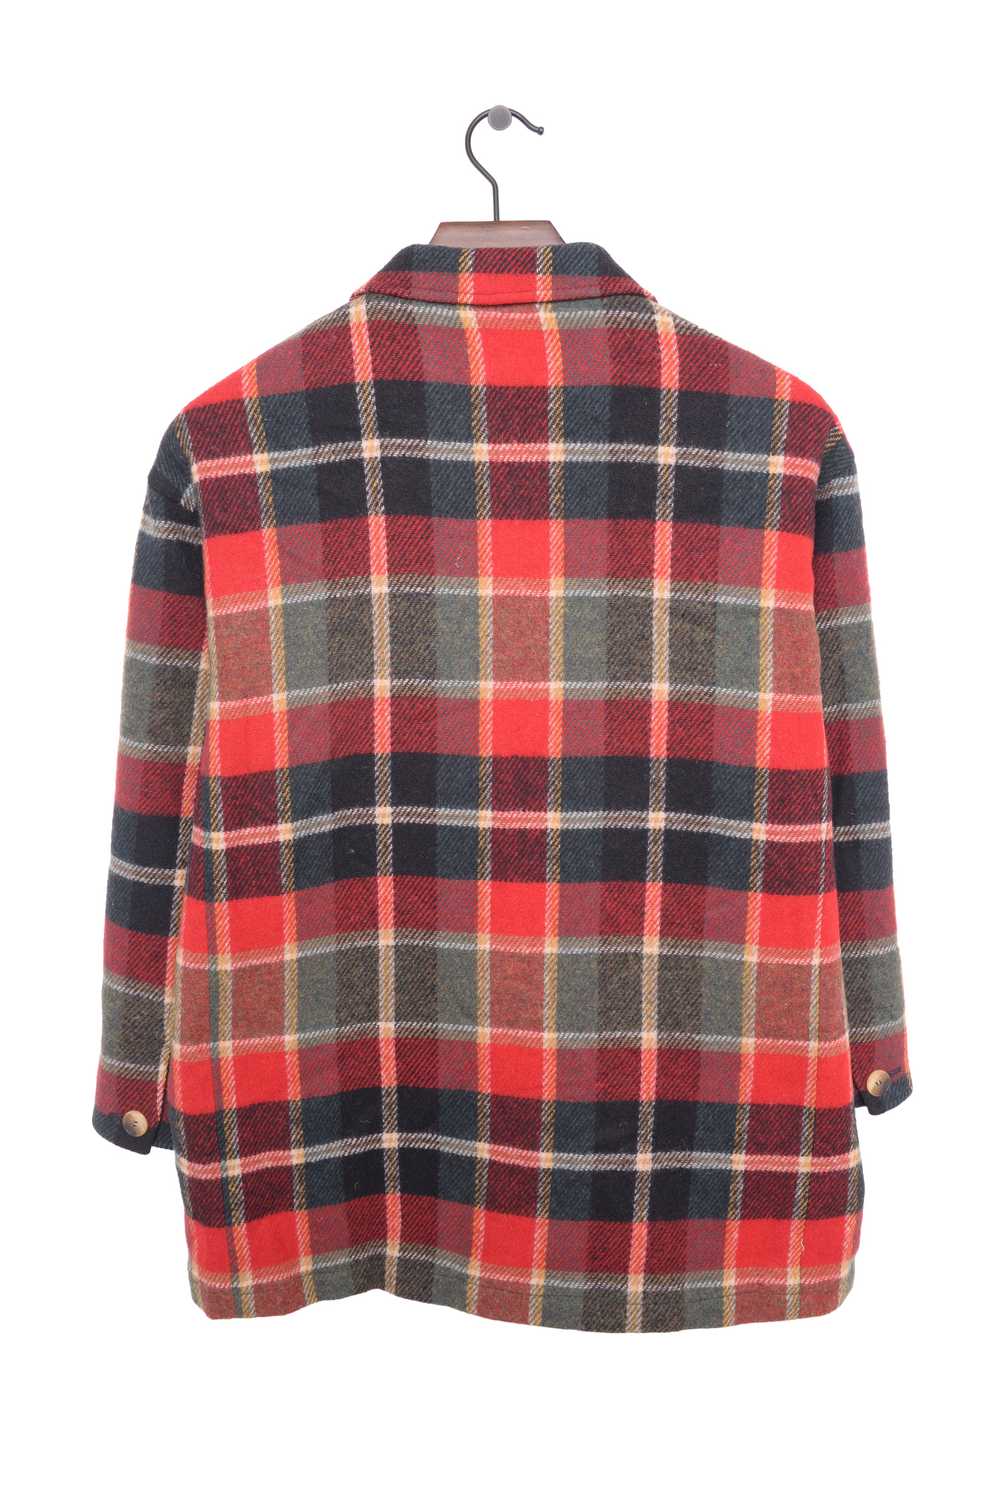 1990s Plaid Wool Coat - image 2